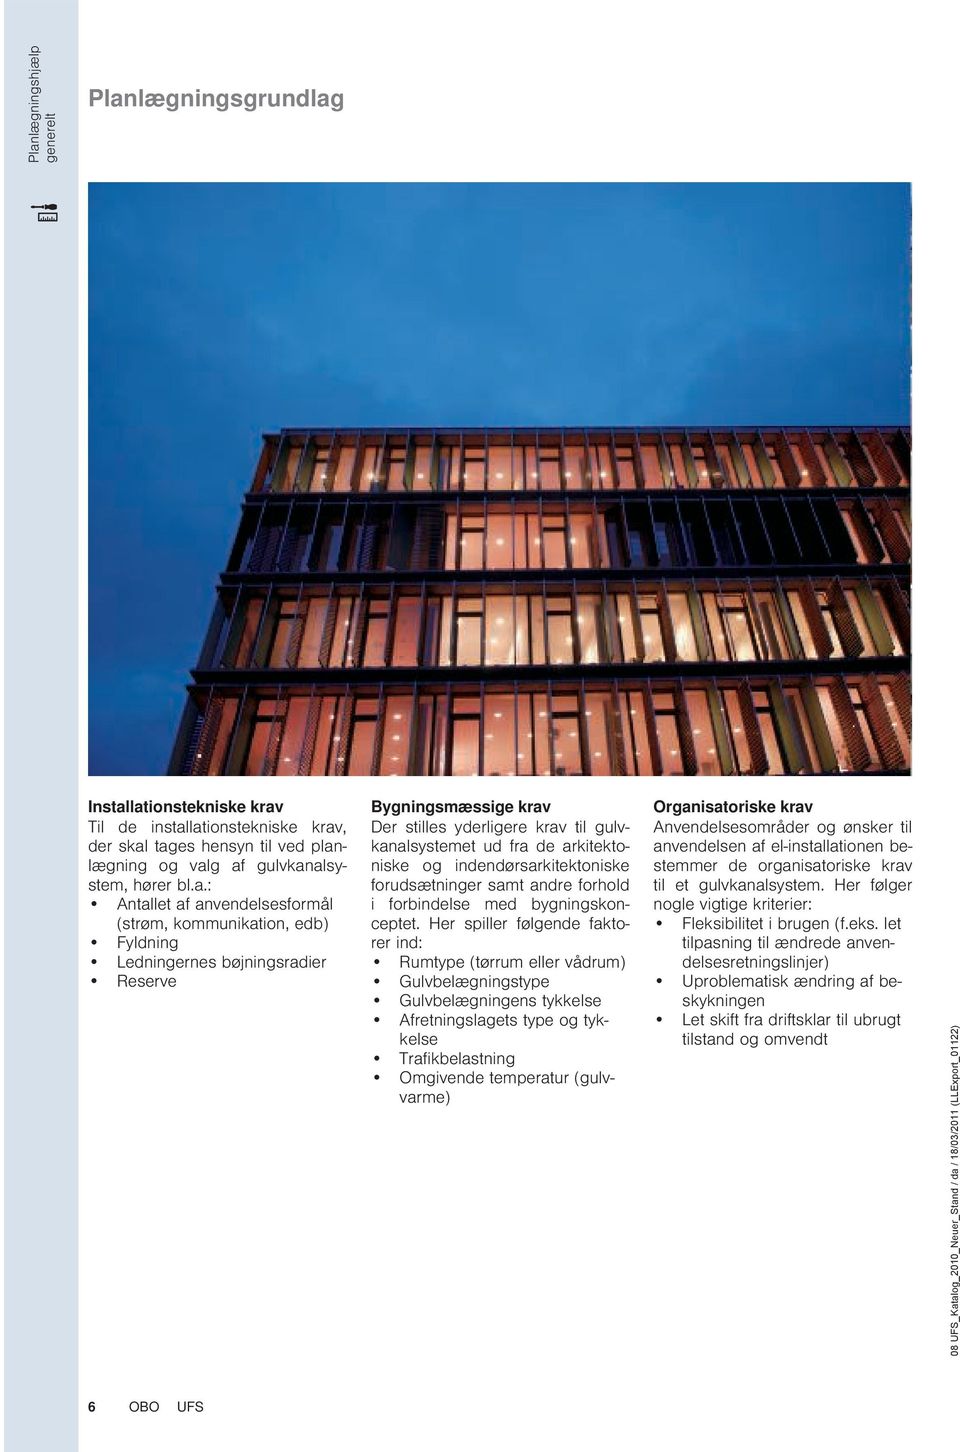 indendørsarkitektoniske forudsætninger samt andre forhold i forbindelse med bygningskonceptet.